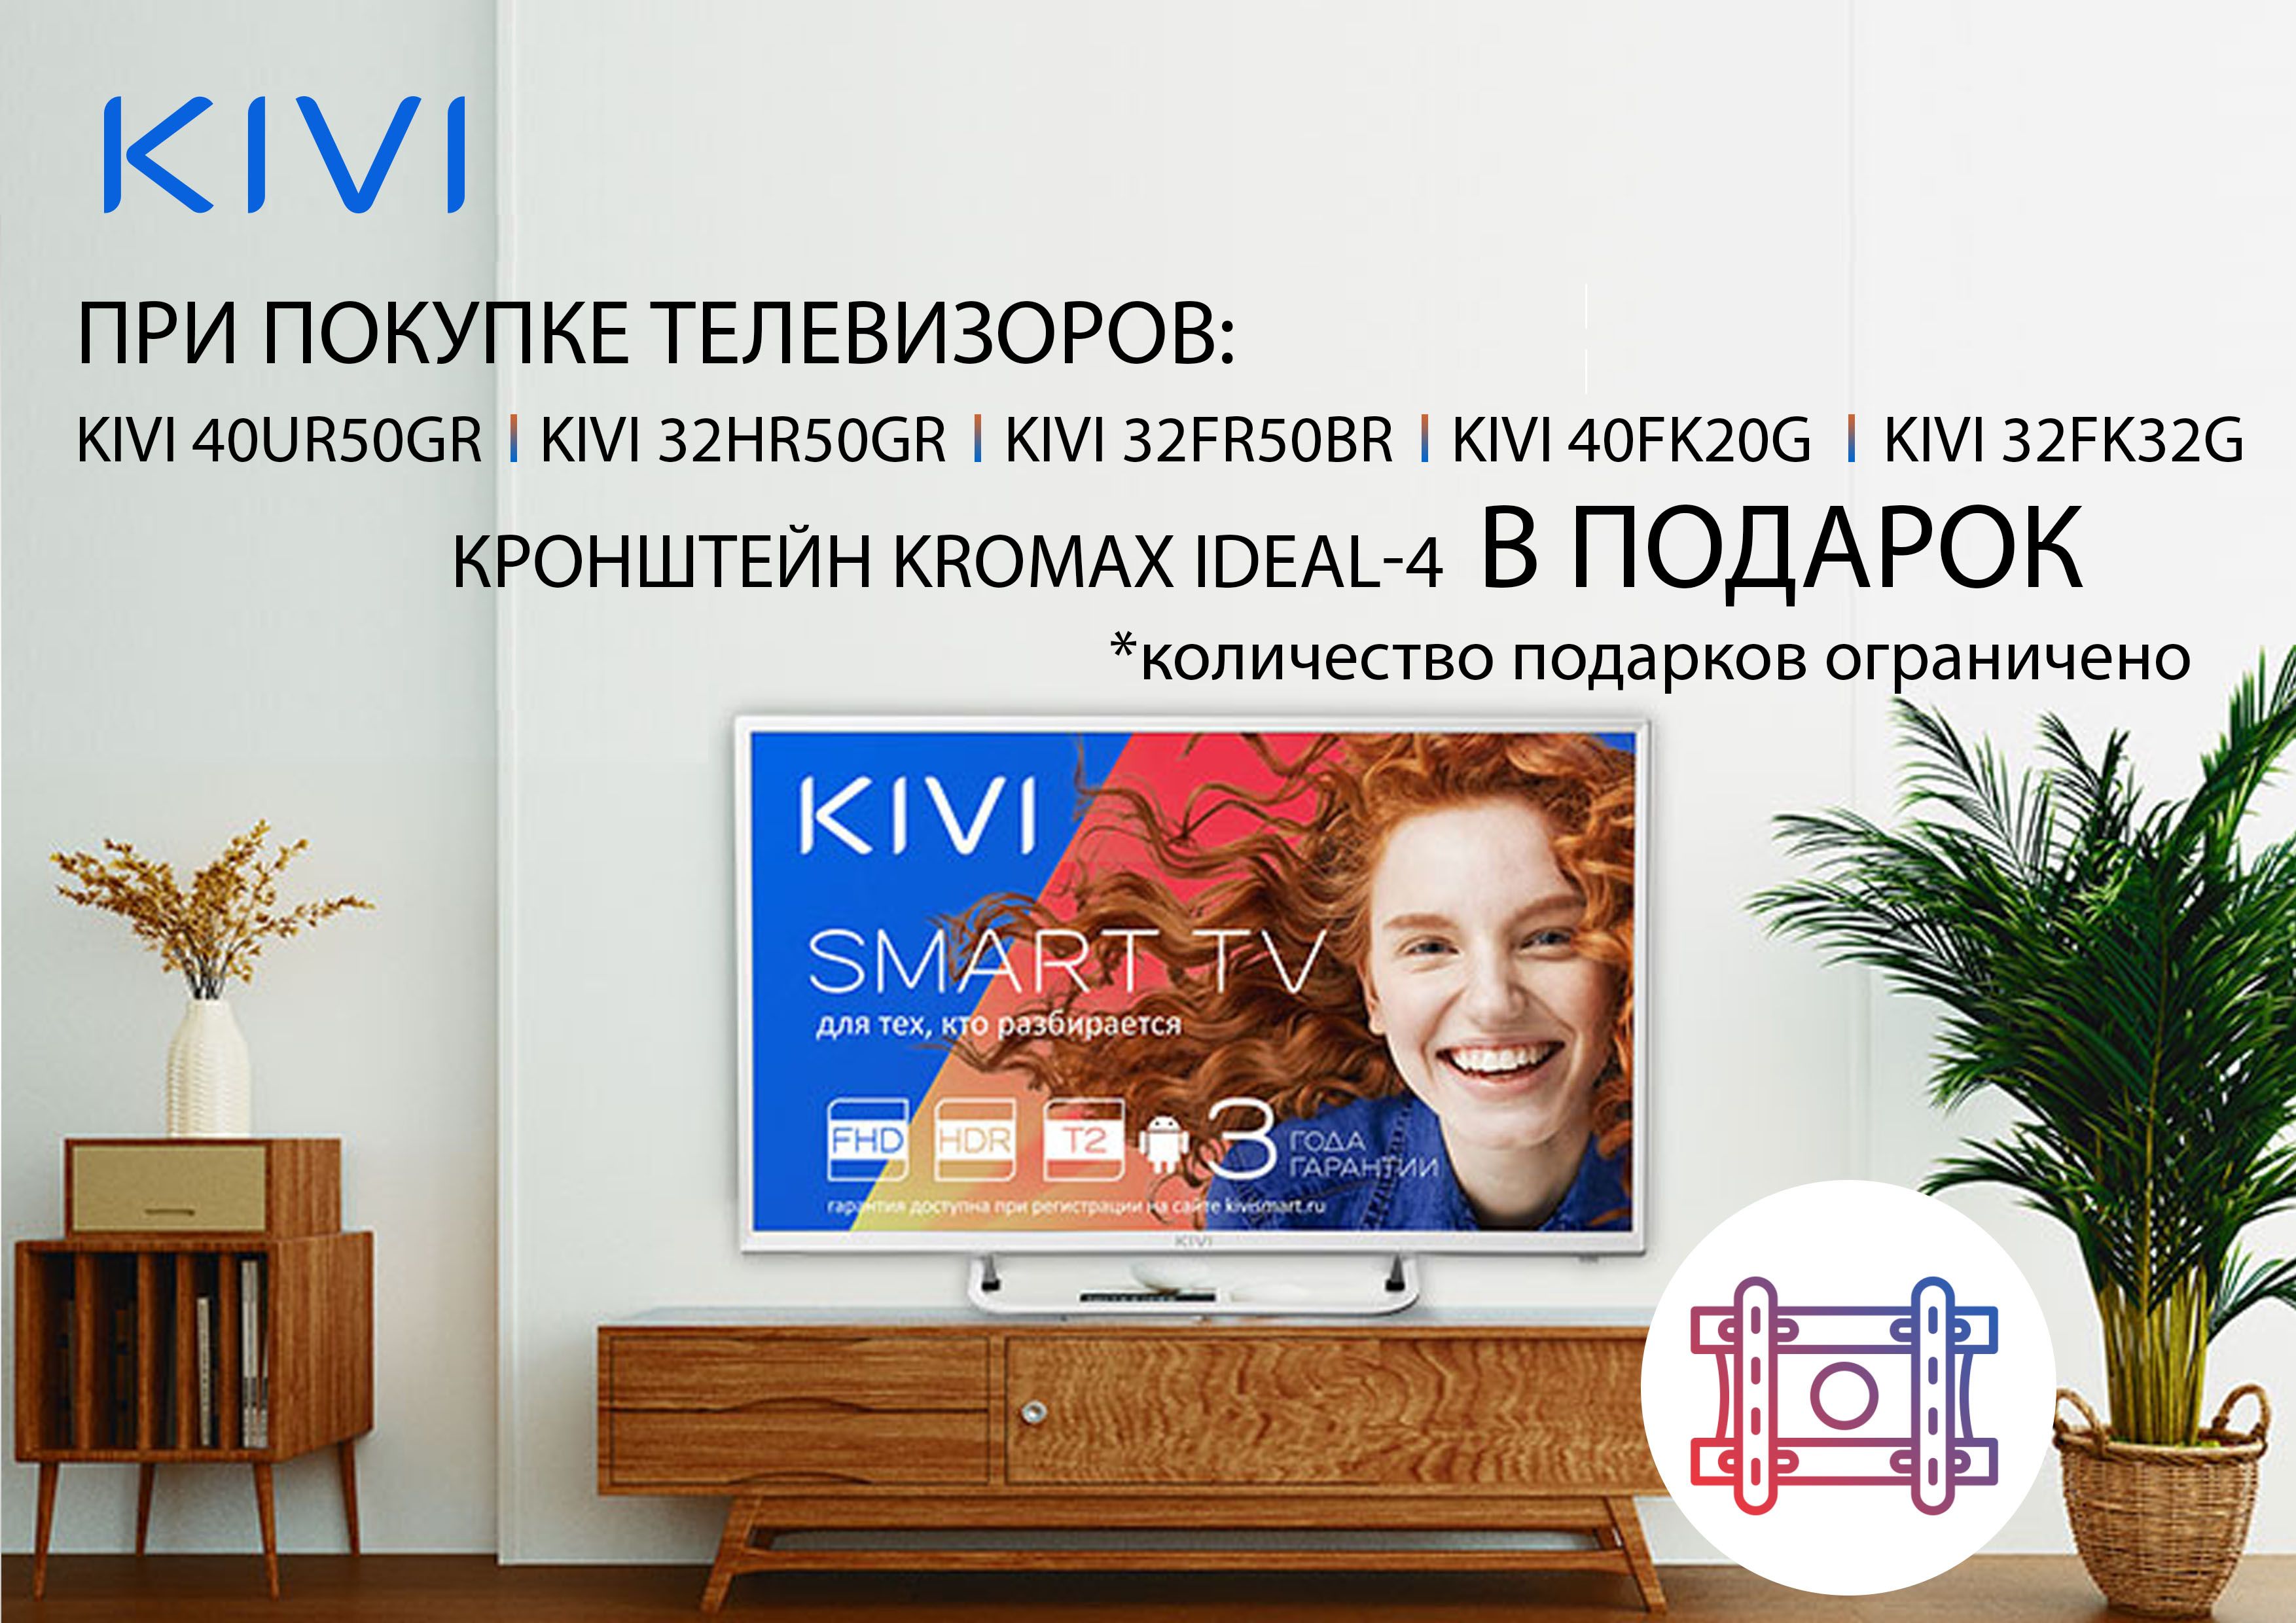 Кронштейн Kromax IDEAL-4 в подарок при покупке телевизоров KIVI